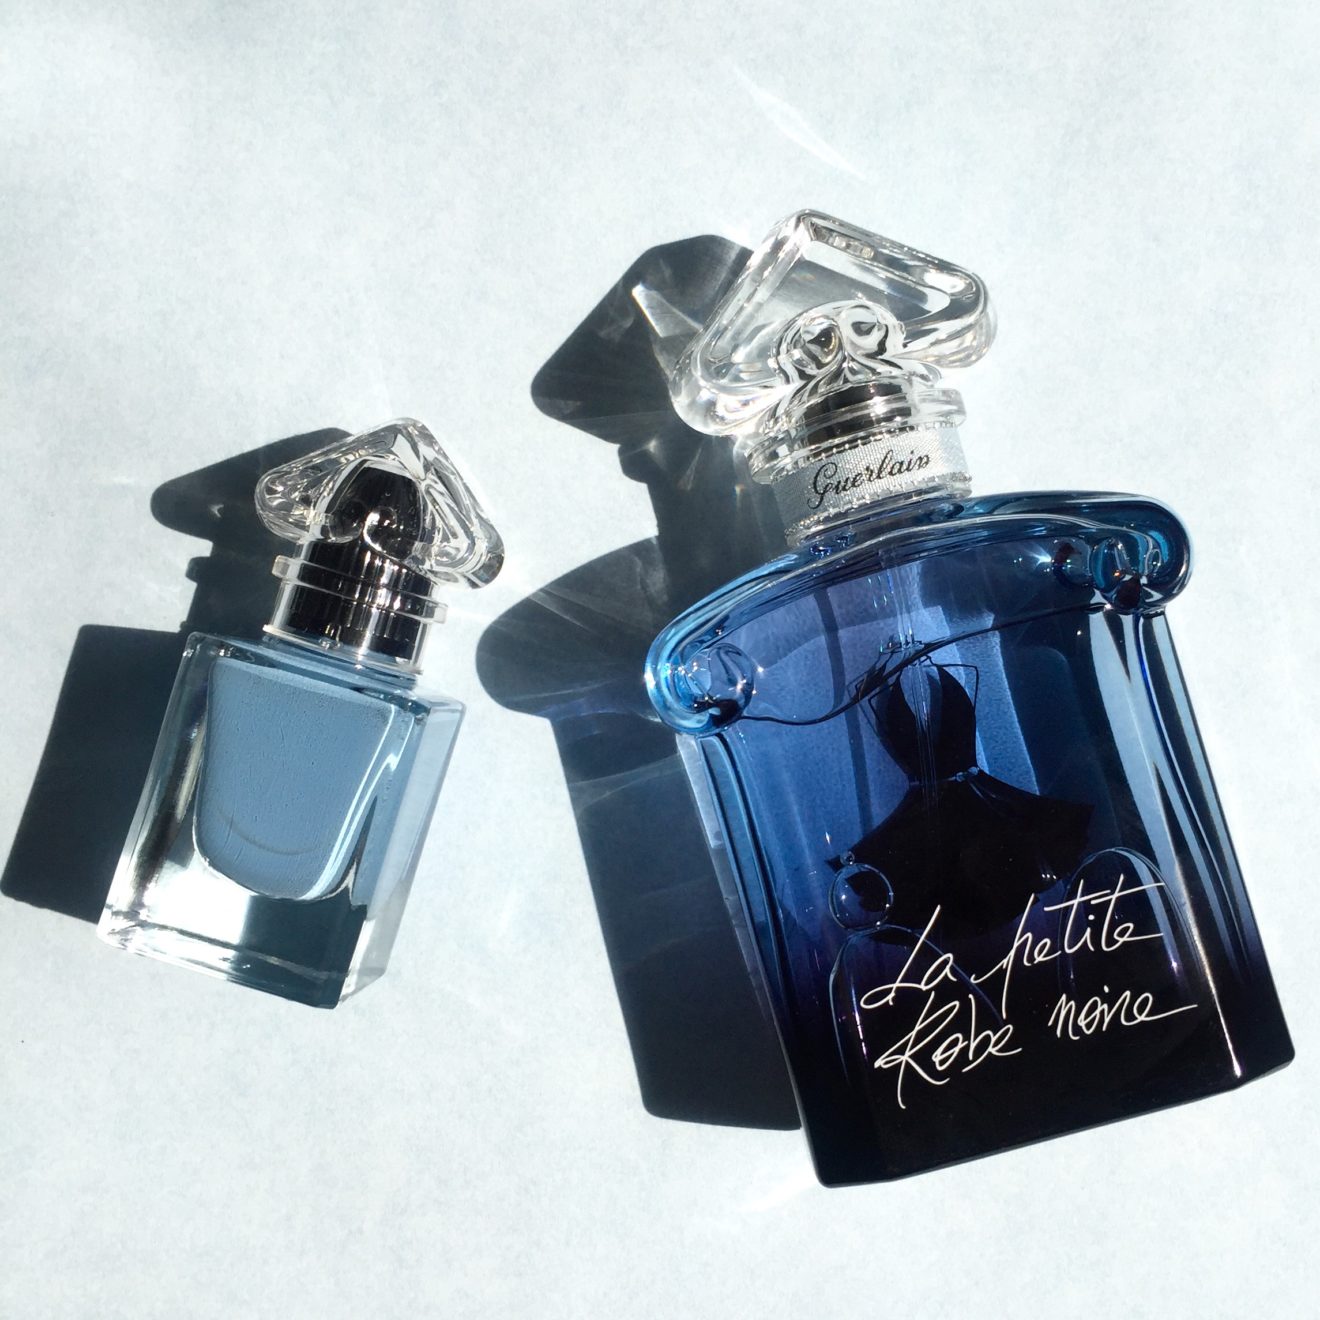 Guerlain La Petite Robe Noire Eau de Parfum Intense & A Denim Jacket To Go With: Review